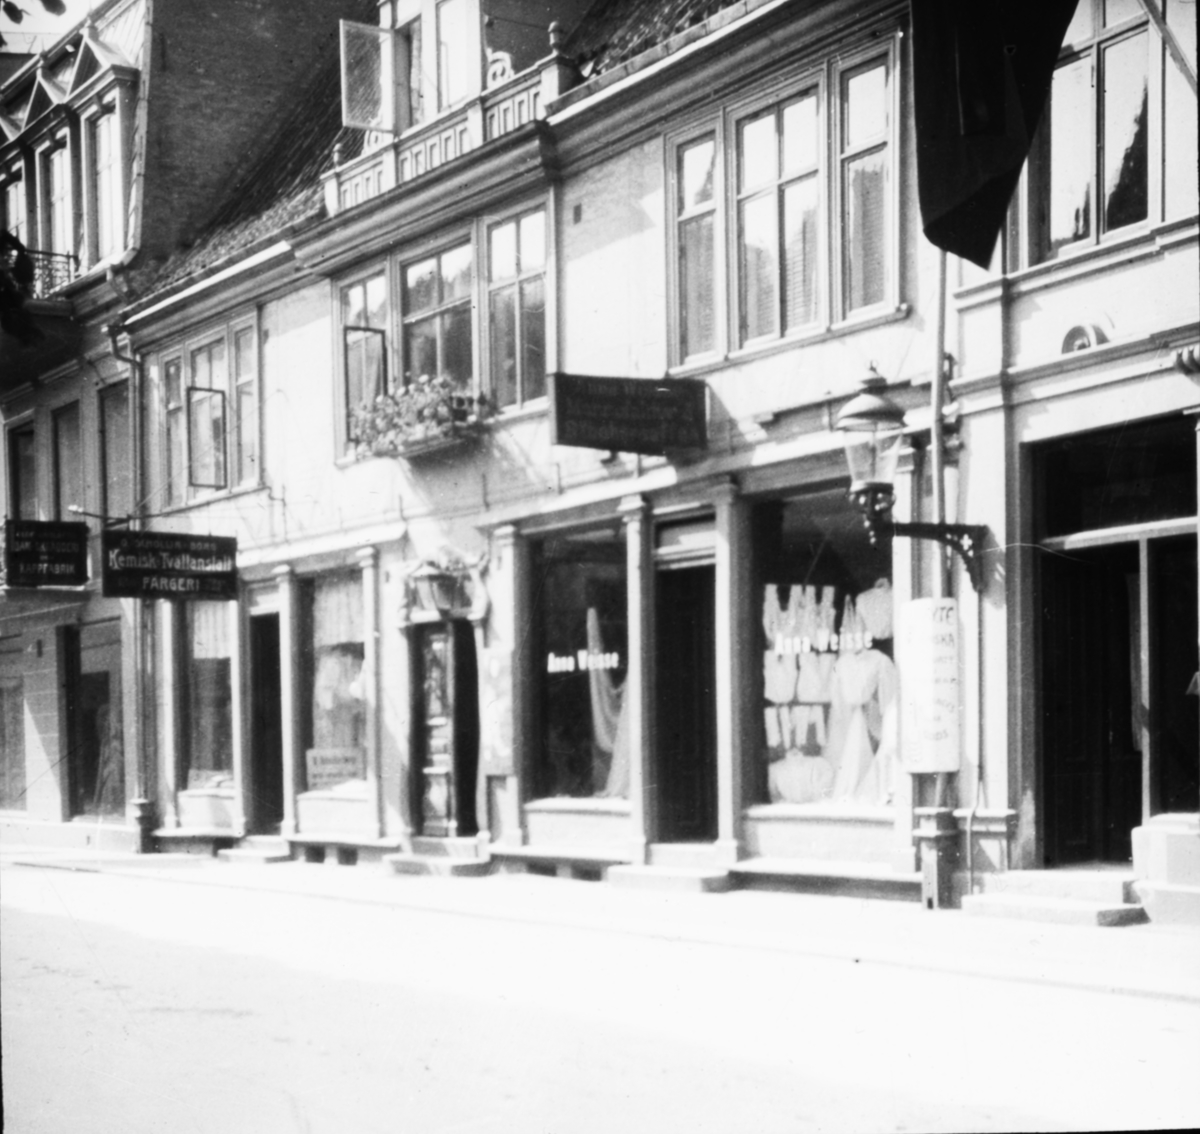 Skioptikonbild med motiv från gata i Helsingborg. Kemisk tvättanstalt, färgeri. Norra Storgatan 9 som efter en restaurering på 1920-talet går under namnet Gamlegård.
Bilden har förvarats i kartong märkt: Helsingborg 8. 1908